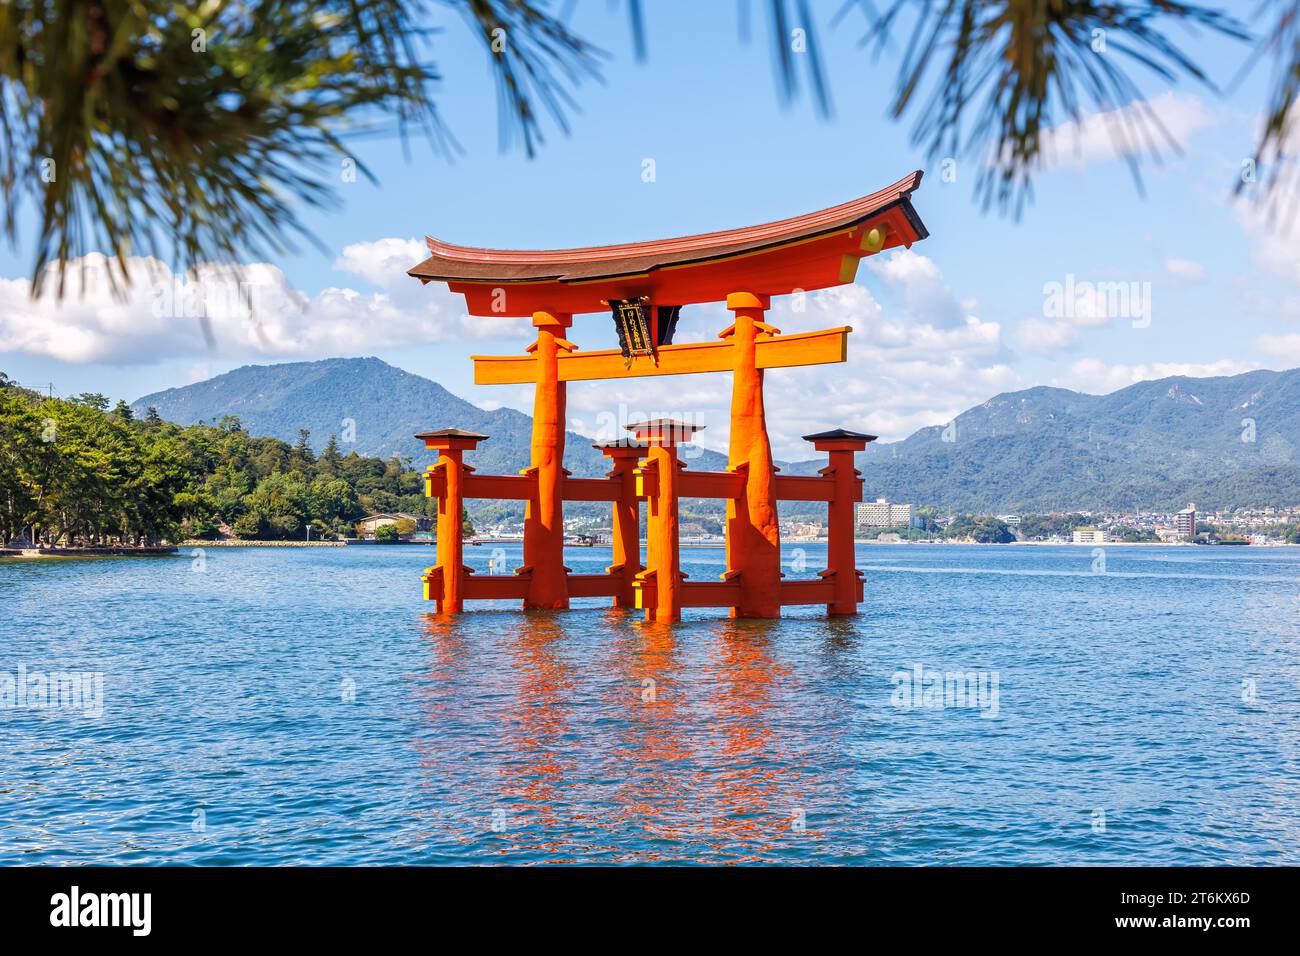 Célèbre porte rouge Grand Torii de bois de l'eau du patrimoine mondial de l'UNESCO sur l'île de Miyajima au Japon Banque D'Images